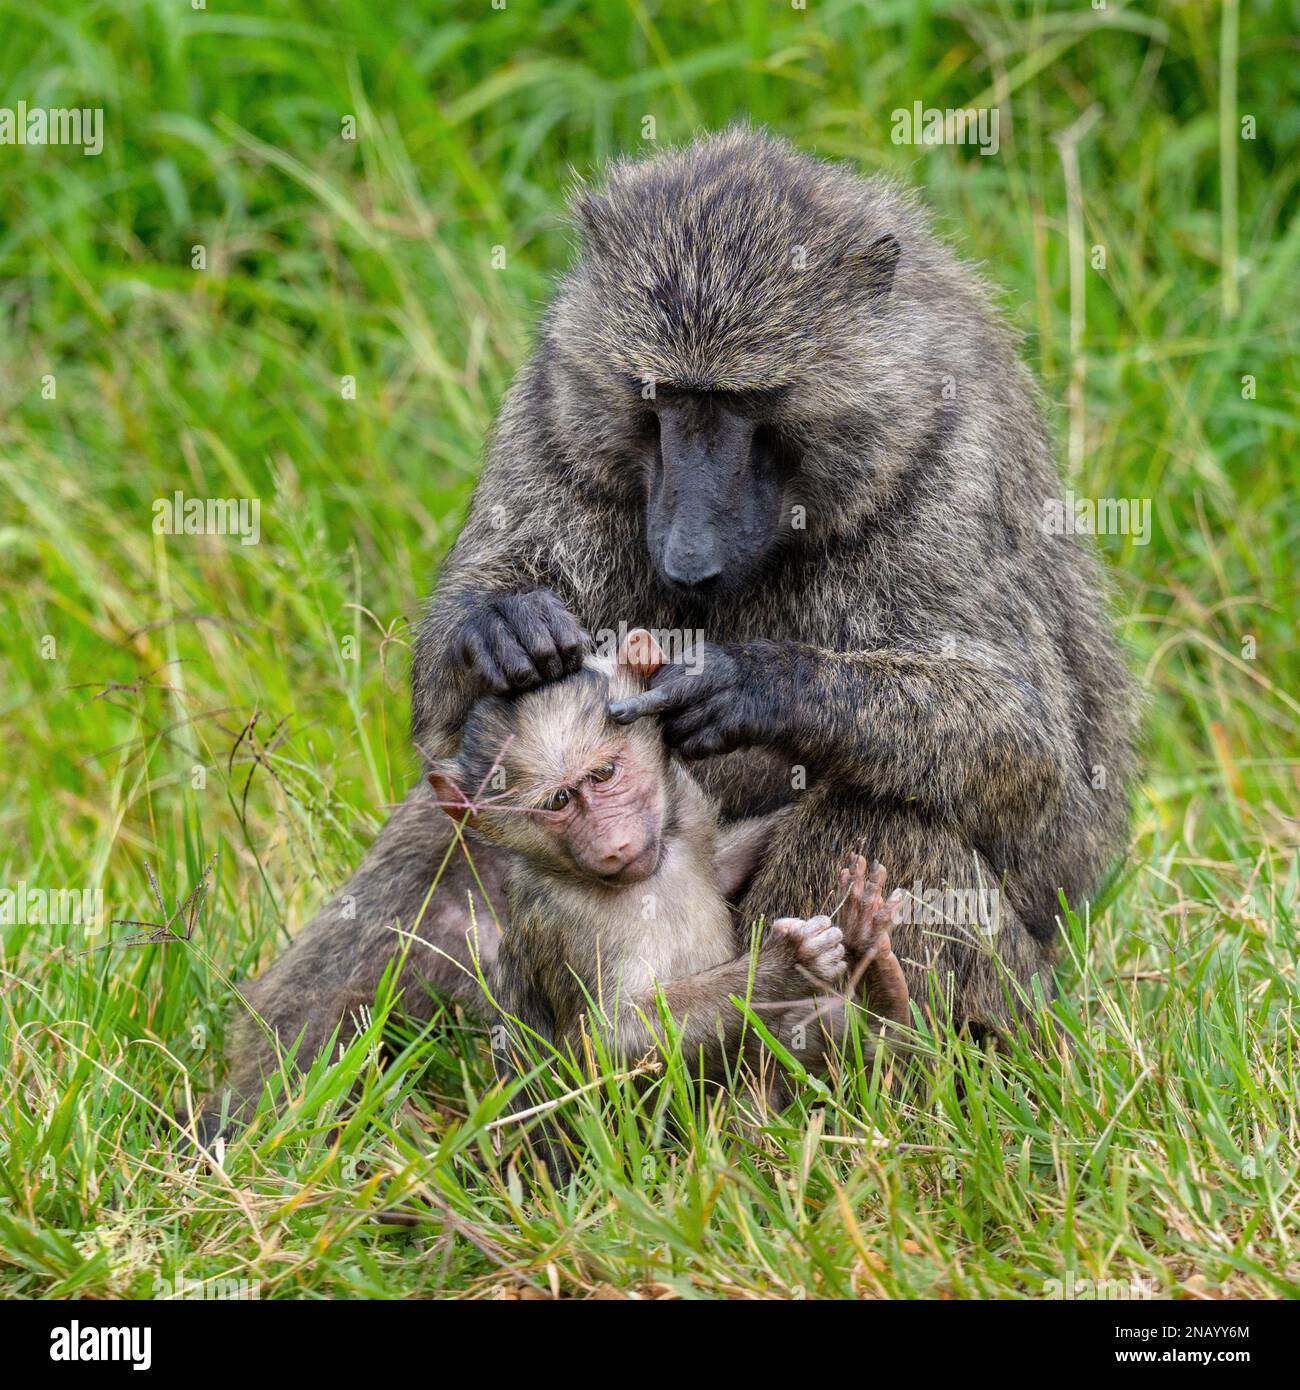 Una madre di babbuino adora con attenzione un giovane in erba da qualche parte in Uganda. Le mani e le dita sono facili da vedere nell'immagine. Foto Stock